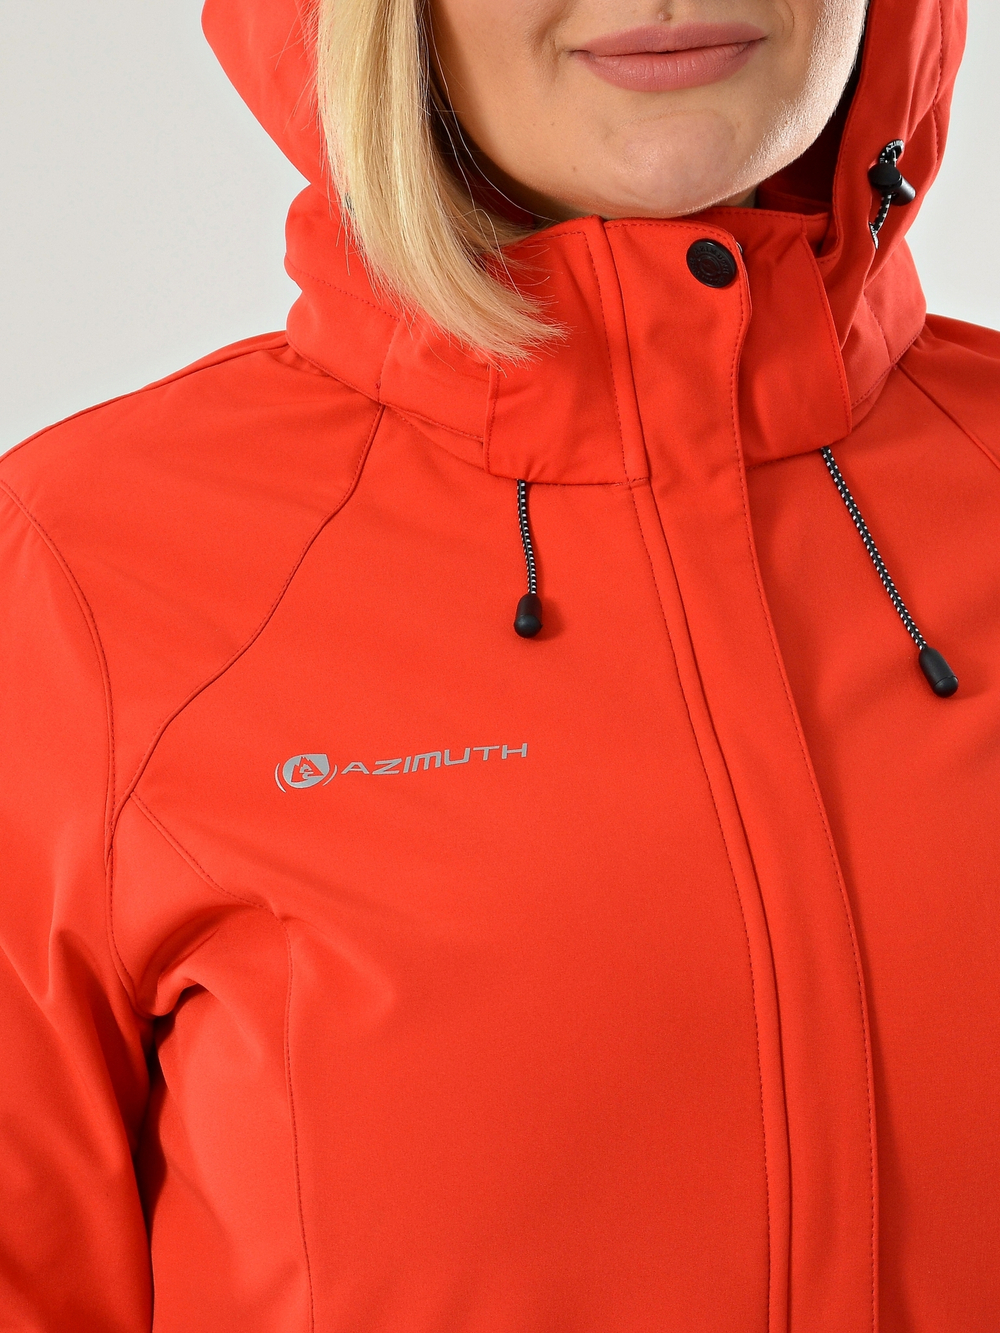 Женская куртка виндстопер /софтшелл красный Azimuth ВТ 20665_1_304 (БР)